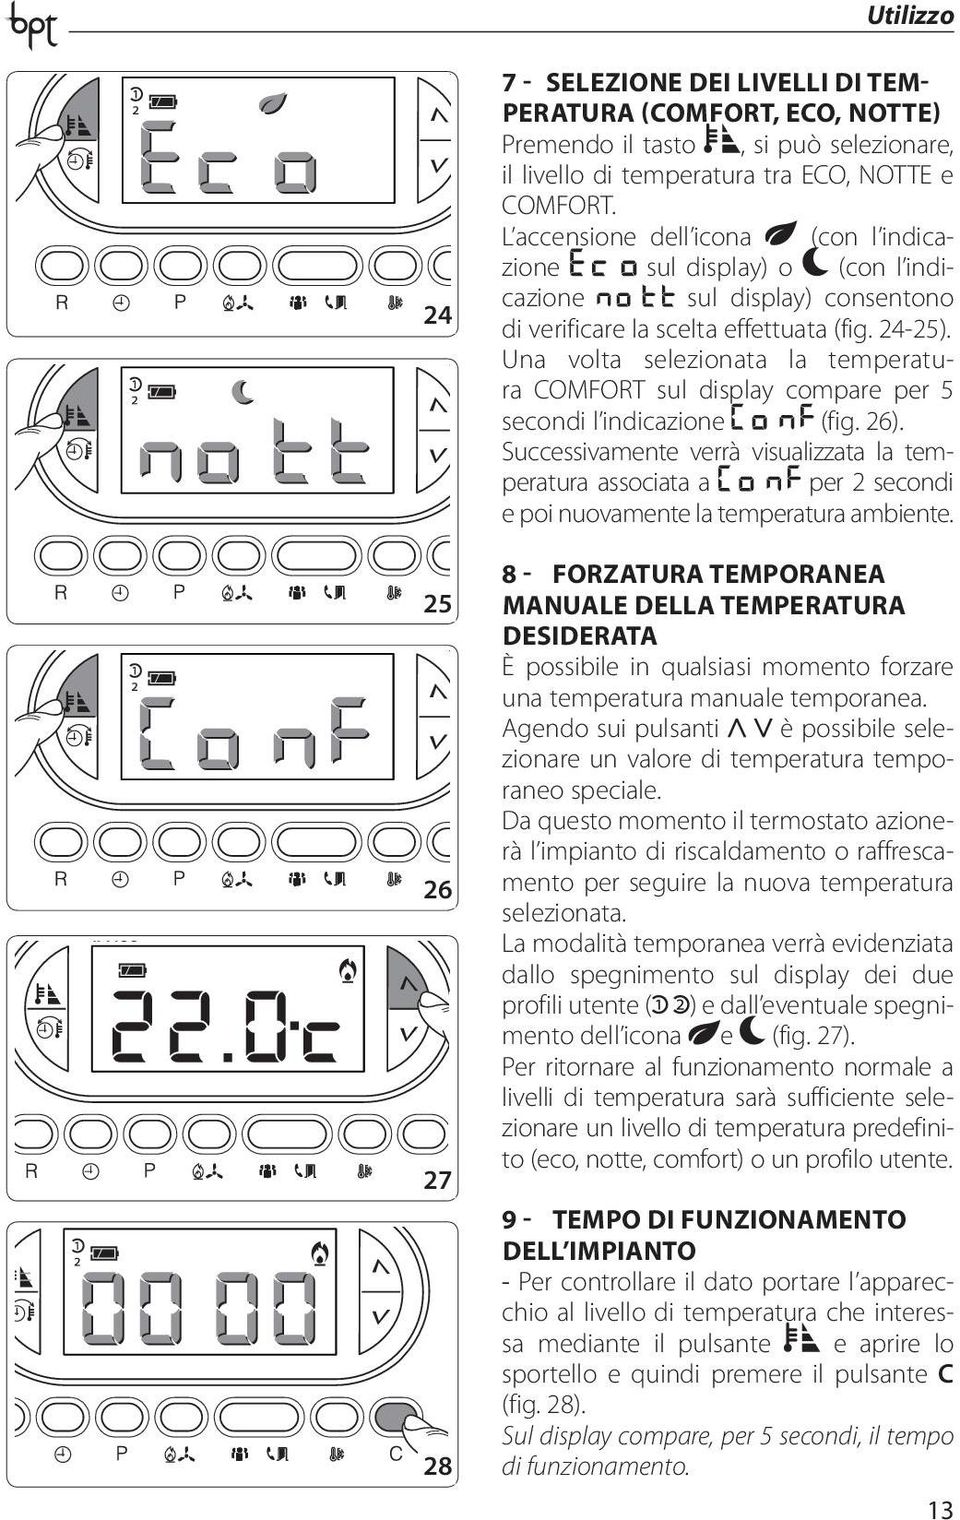 Una volta selezionata la temperatura COMFORT sul display compare per 5 secondi l indicazione (fig. 26).